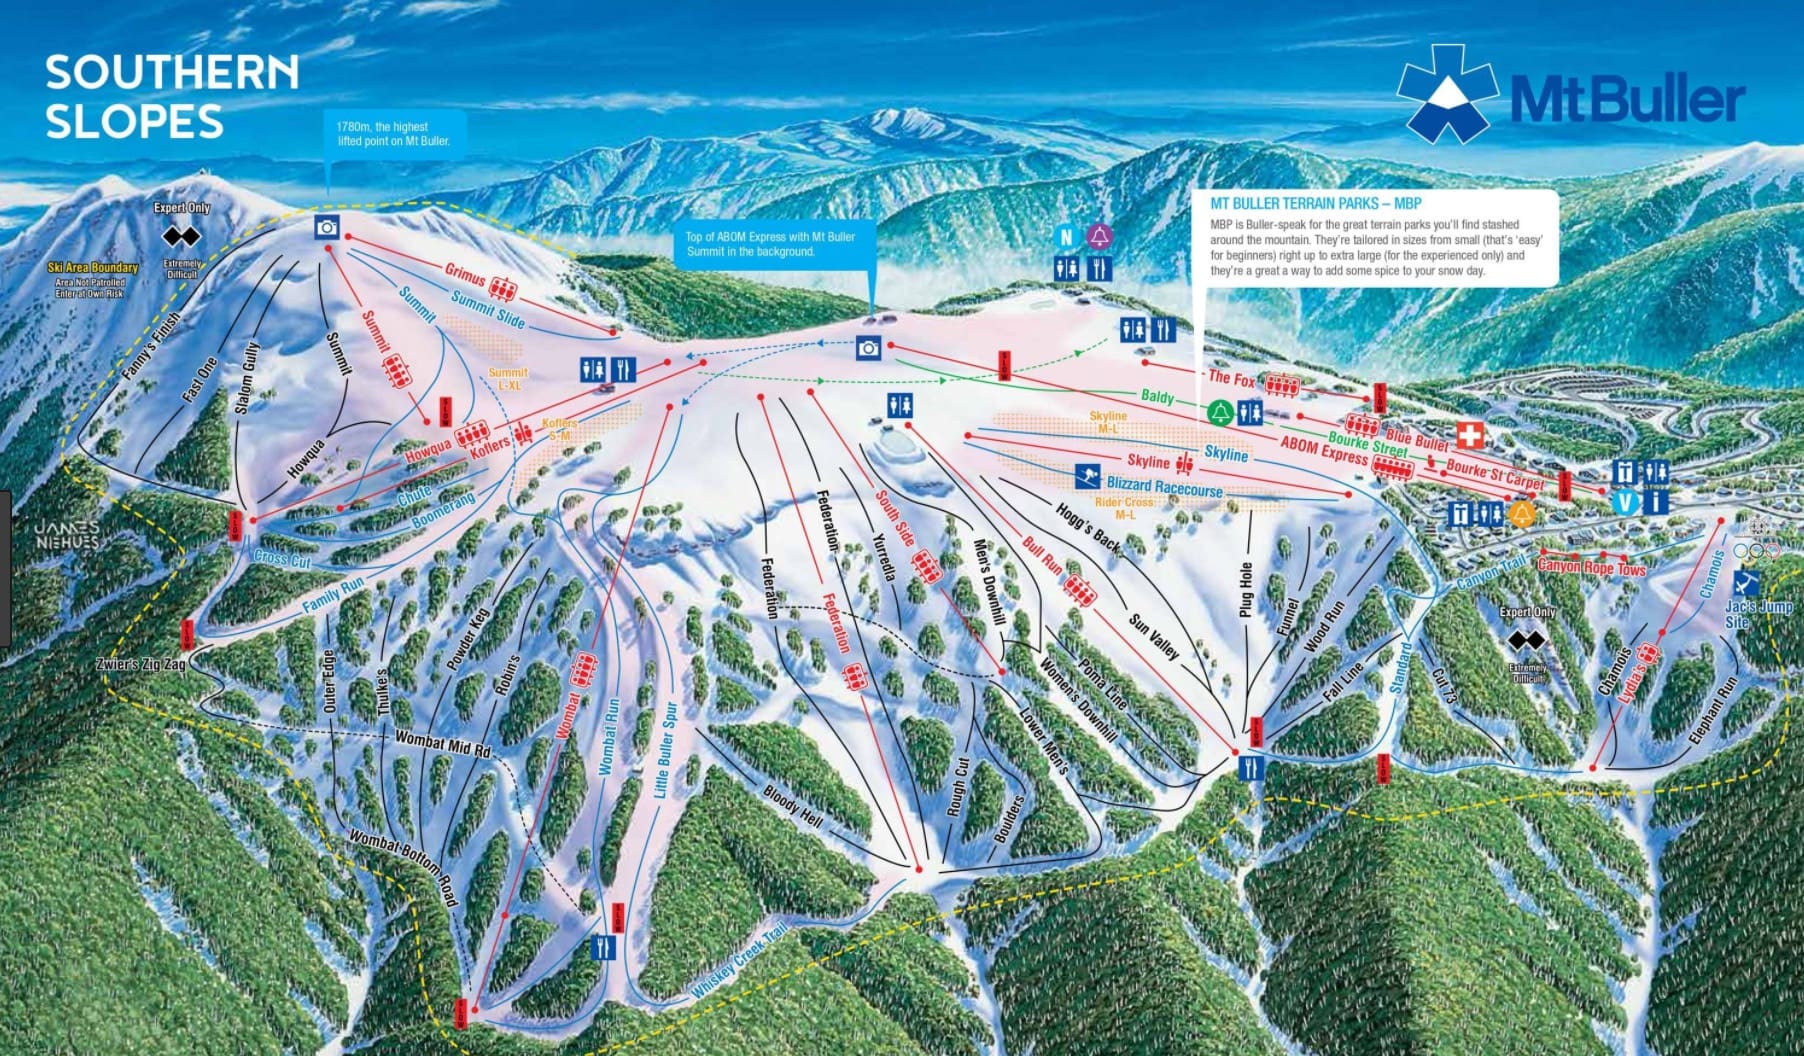 Ikon Pass Adds Another International Ski Destination To Pass